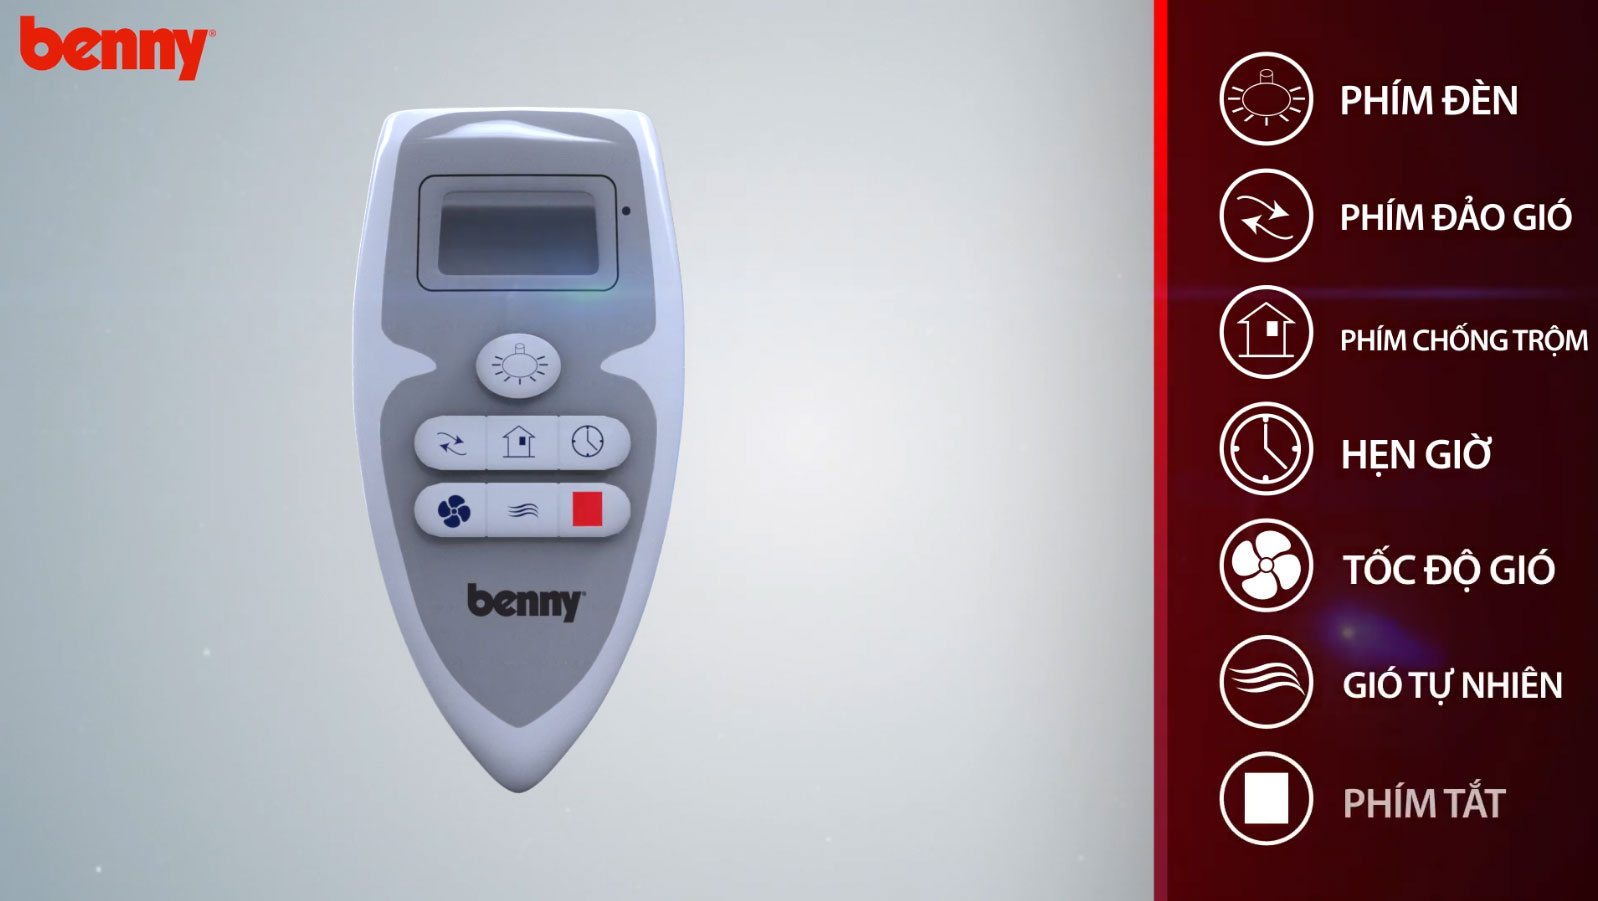 Benny BF-C43V có chế độ hẹn giờ tiện lợi, tích hợp điều khiển từ xa thông minh